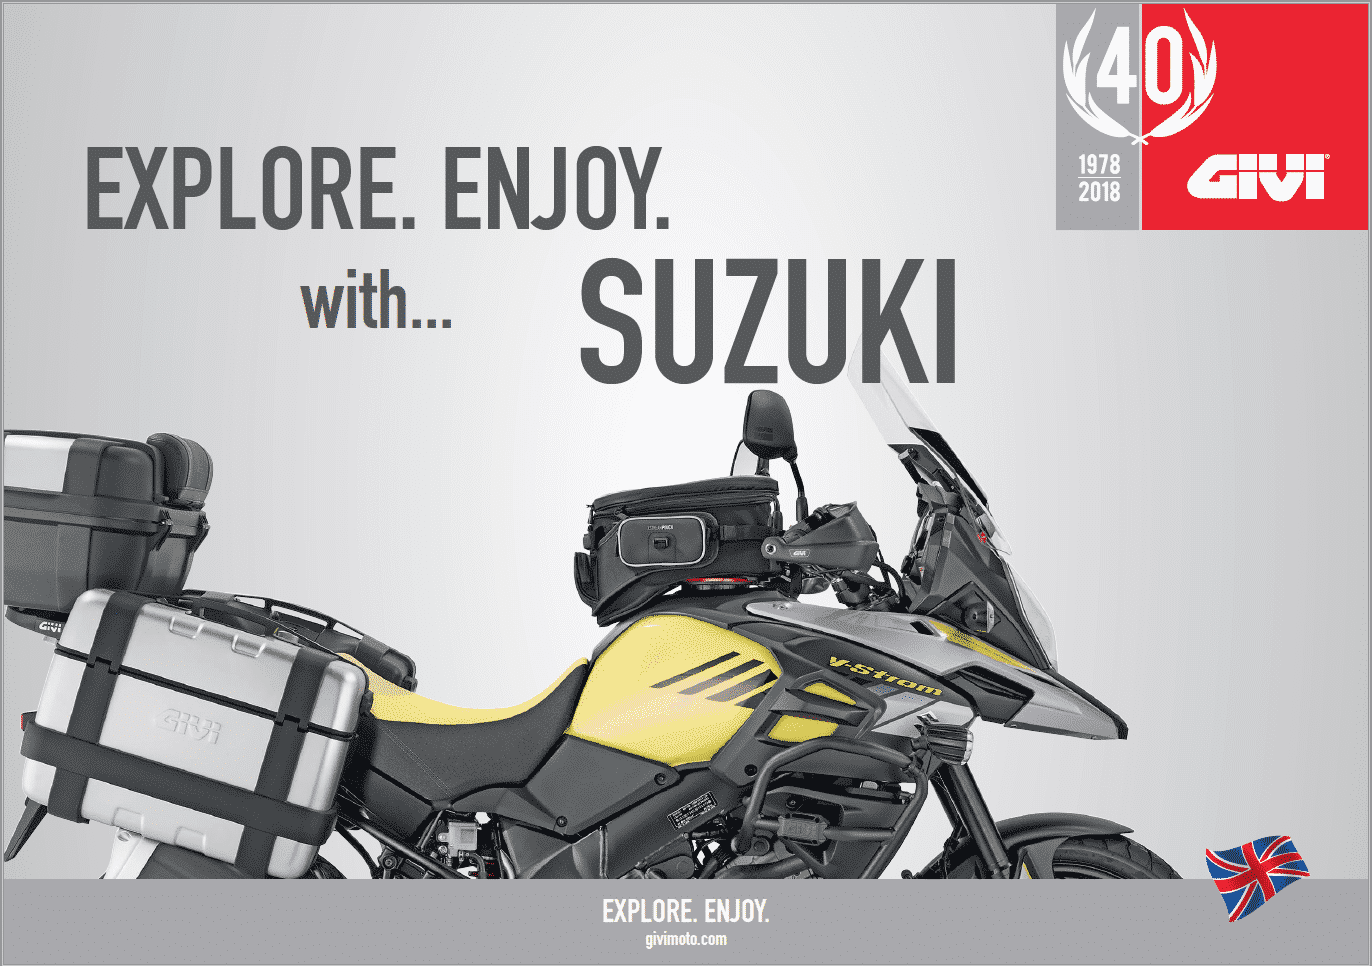 GIVI Accessories for Suzuki Motorcycles - ของแต่ง GIVI สำหรับ Suzuki